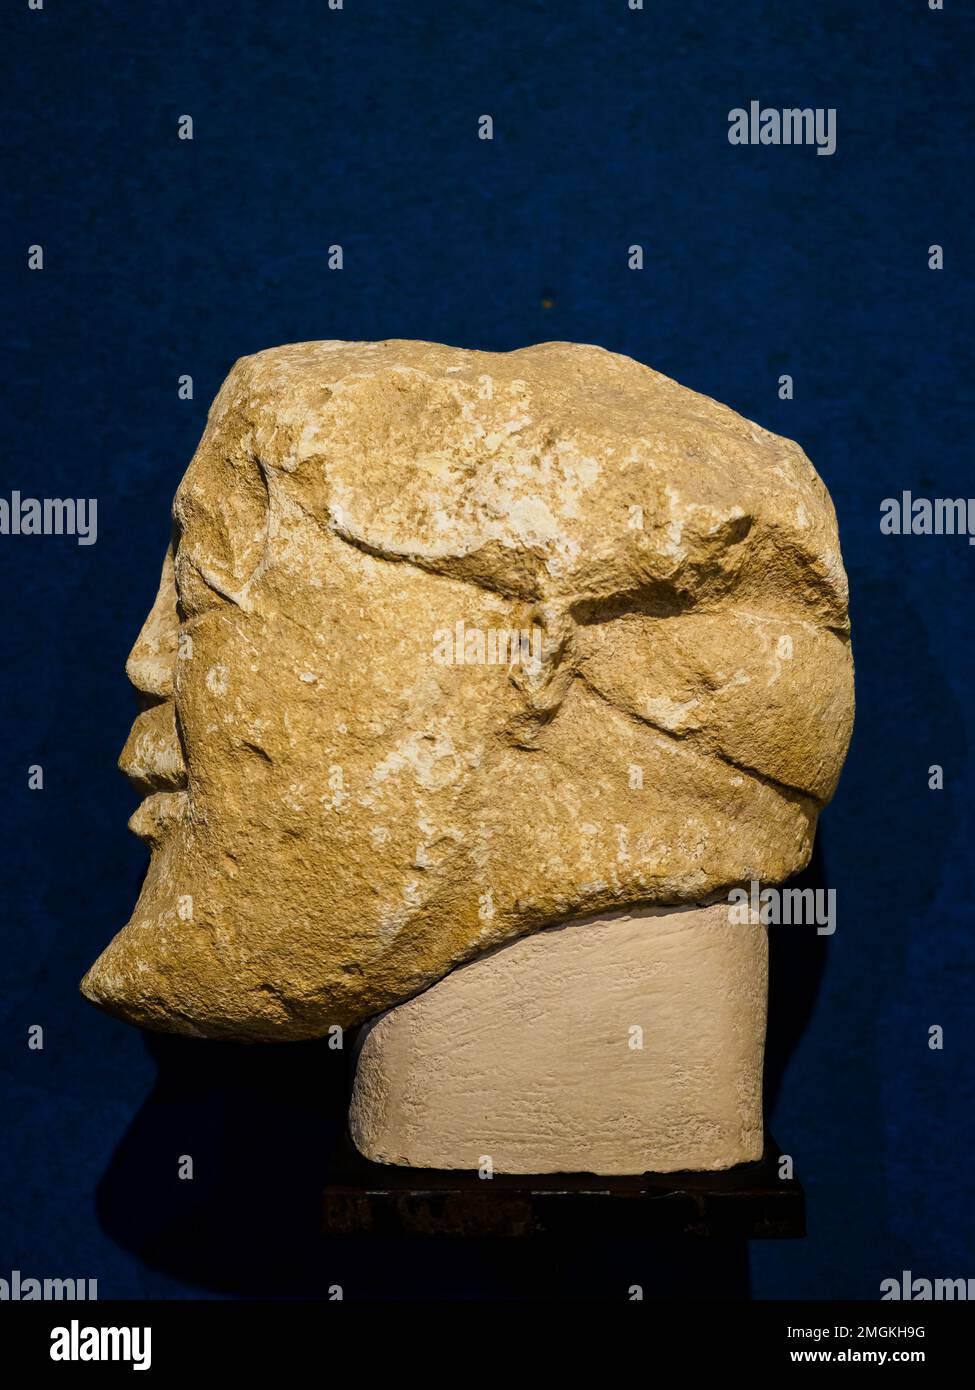 Votivdeponat mit männlichem Kopf, aus einer einheimischen Werkstatt. 550 - 525 BC - Museo Archeologico Regionale Paolo Orsi - Syracuse, Sizilien, Italien Stockfoto